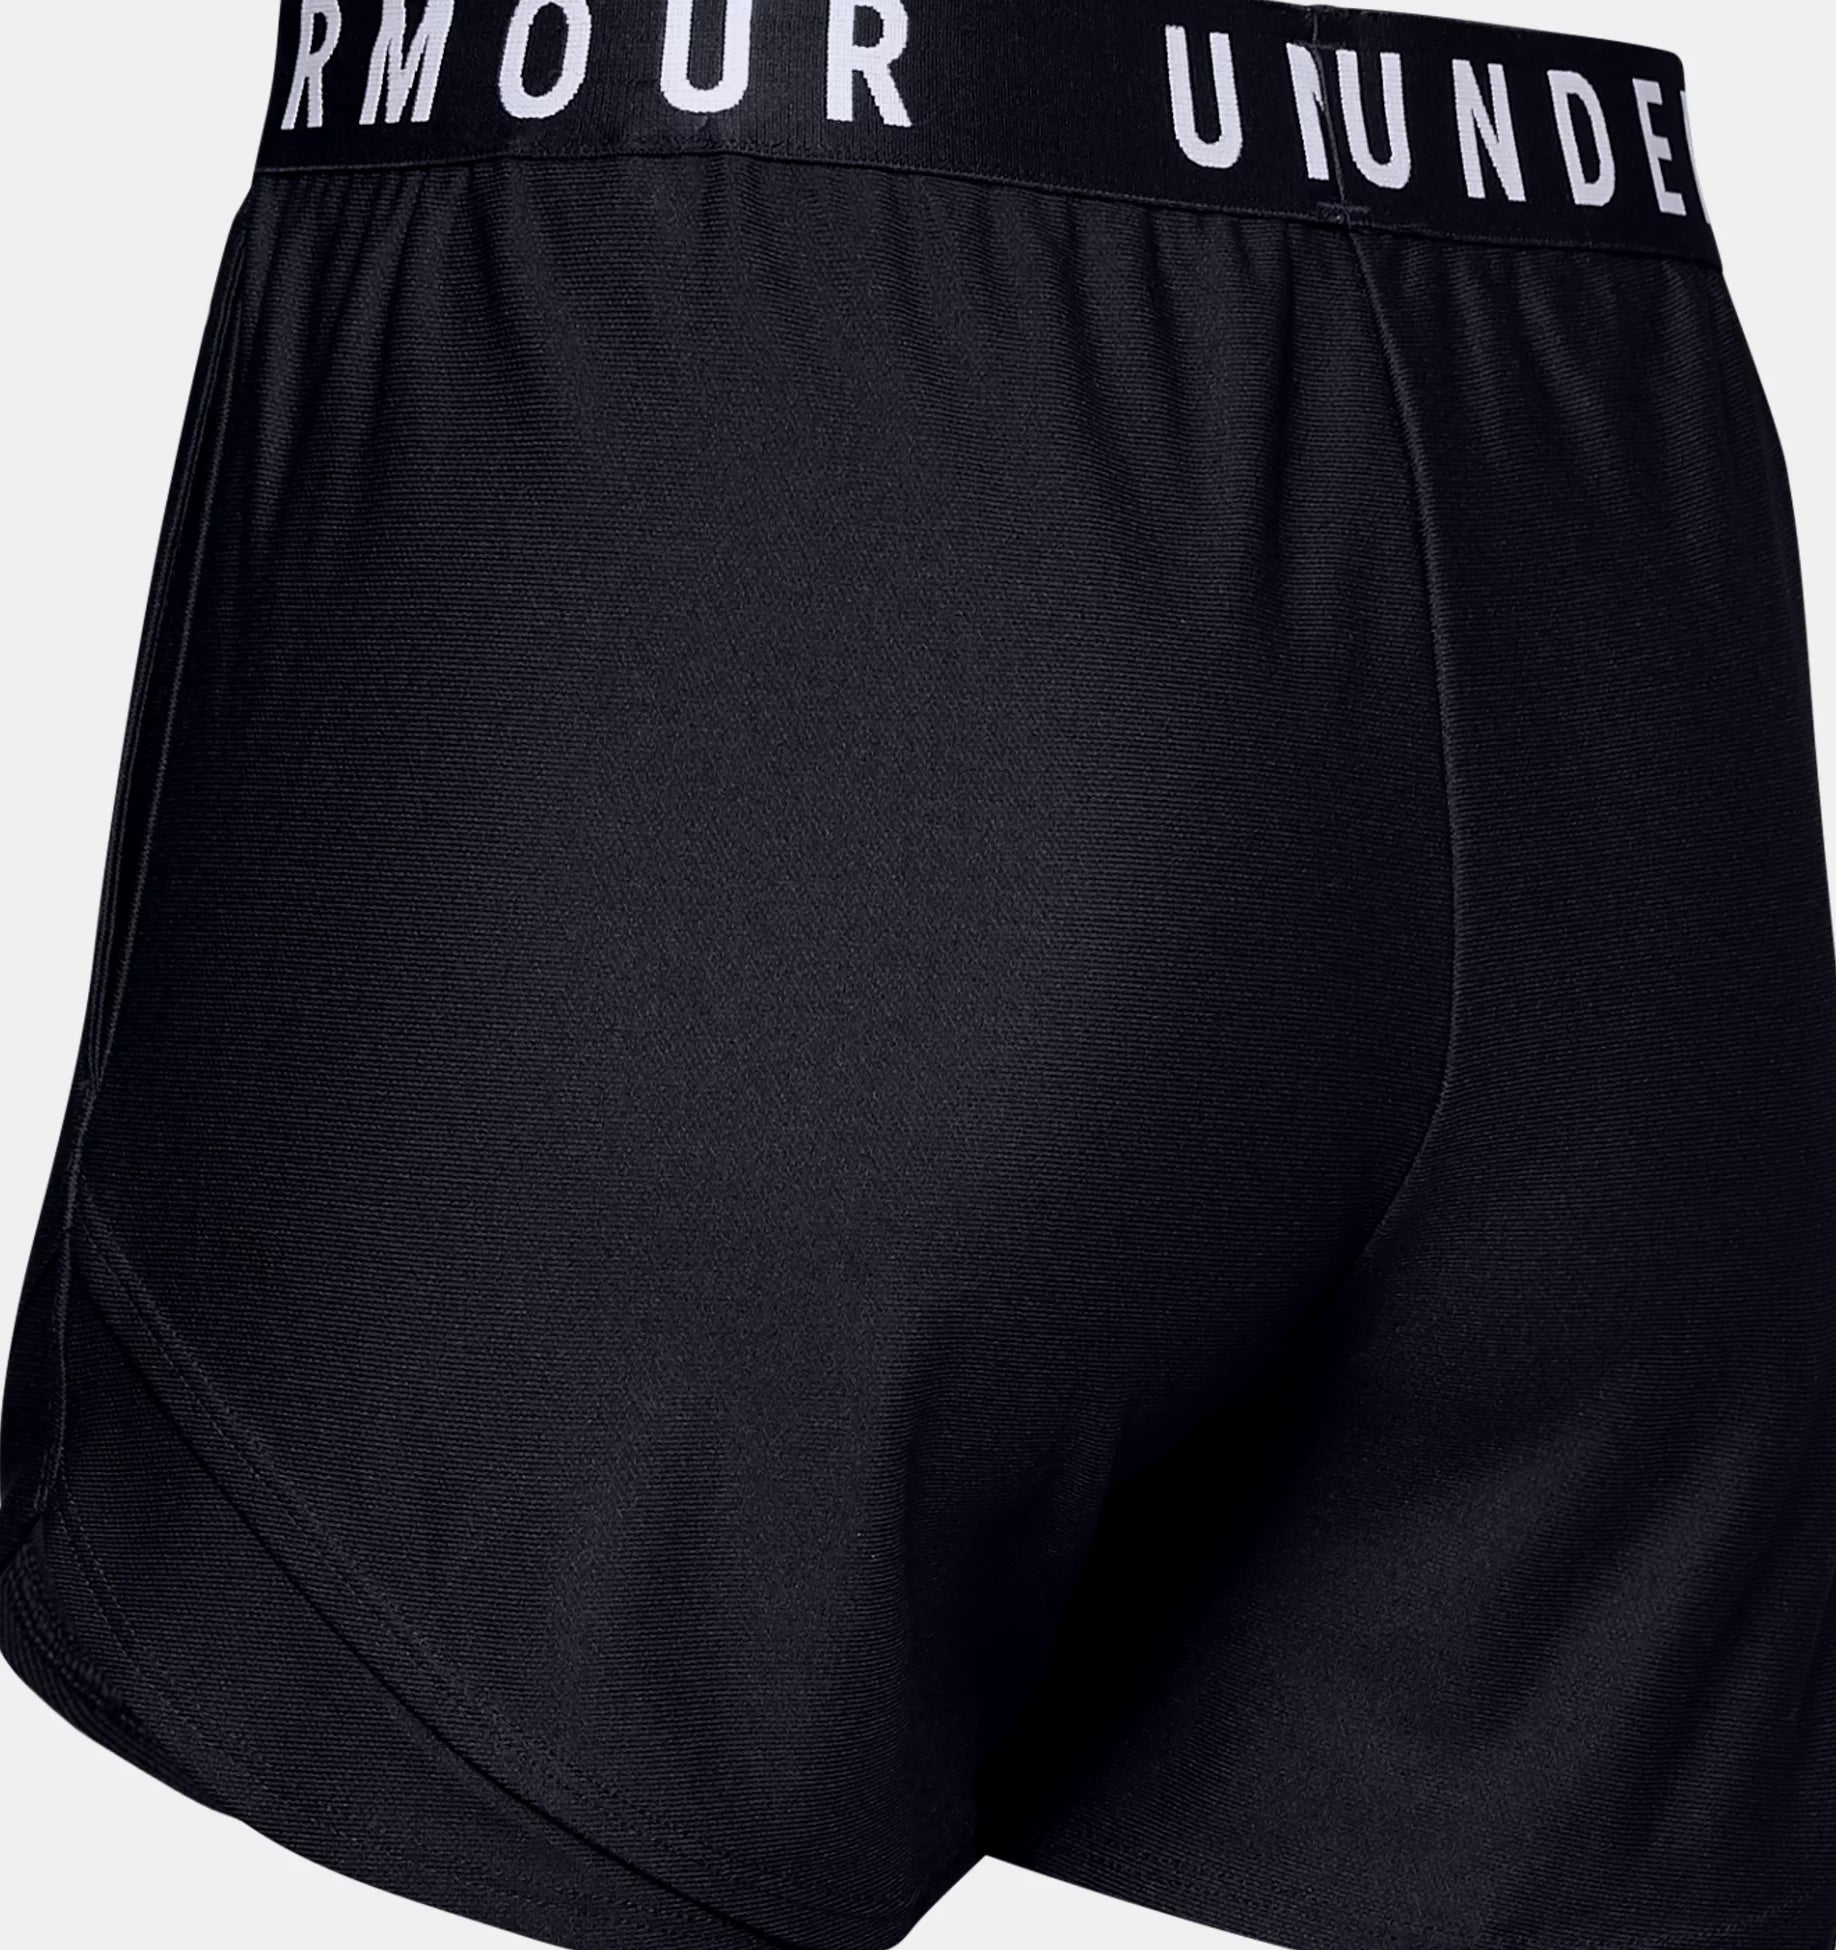 Under Armour Play Up 3.0 - Shorts da Running Donna - Neverland Firenze